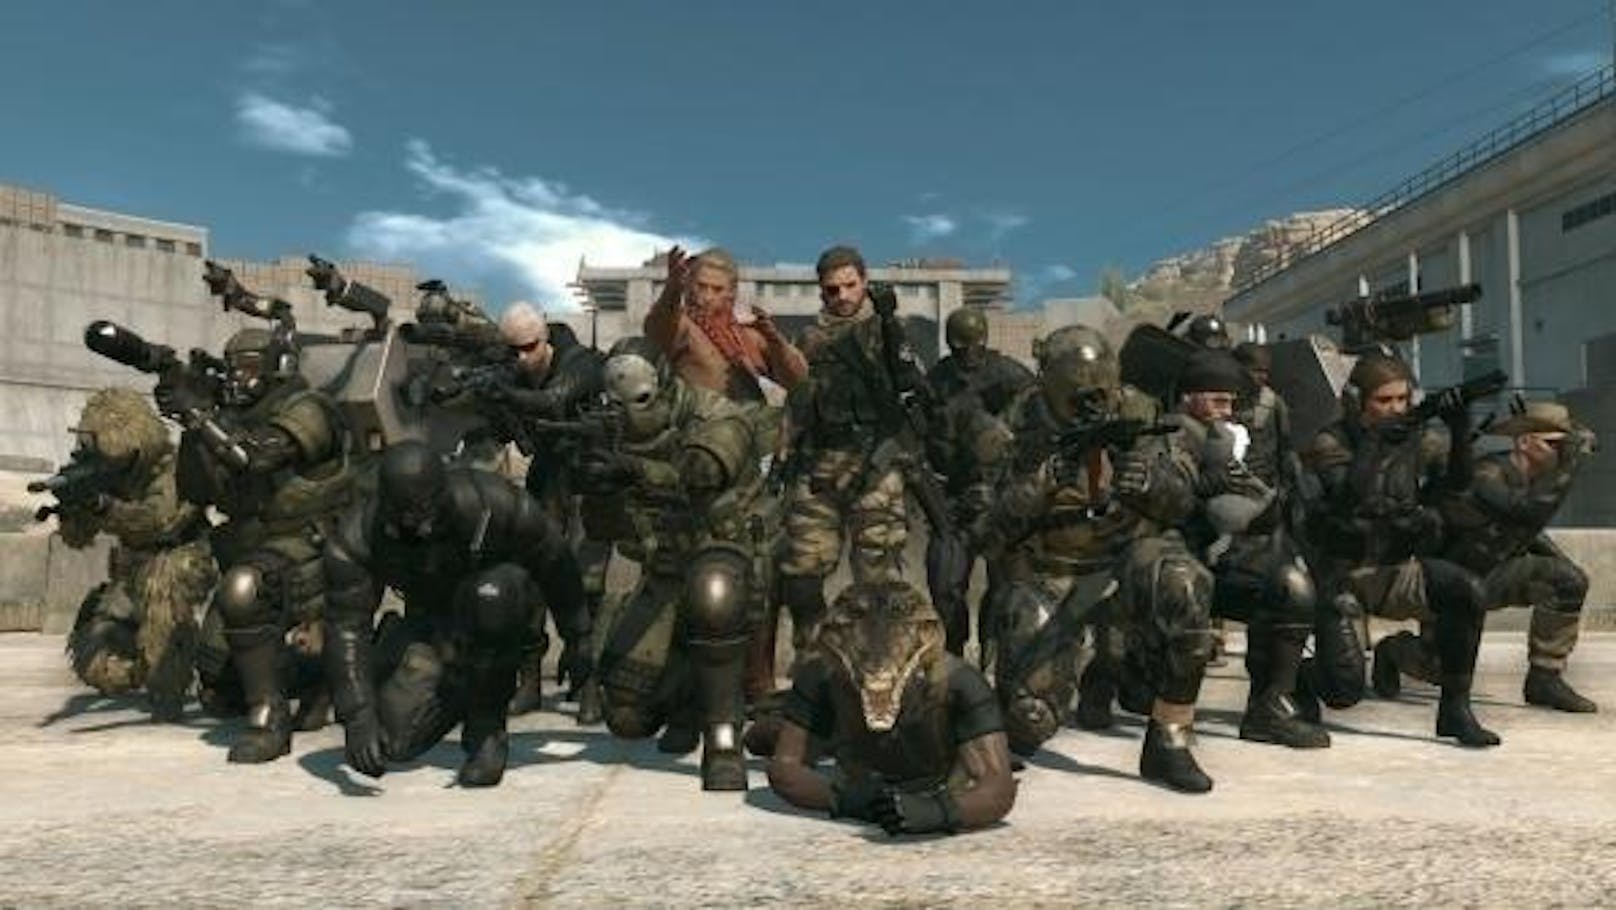 Spielversicherung: Im Multiplayermodus des Actionspiels "Metal Gear Solid 5" konnten Spieler ihre Online-Basisstation für reales Geld gegen Beschädigungen versichern lassen.